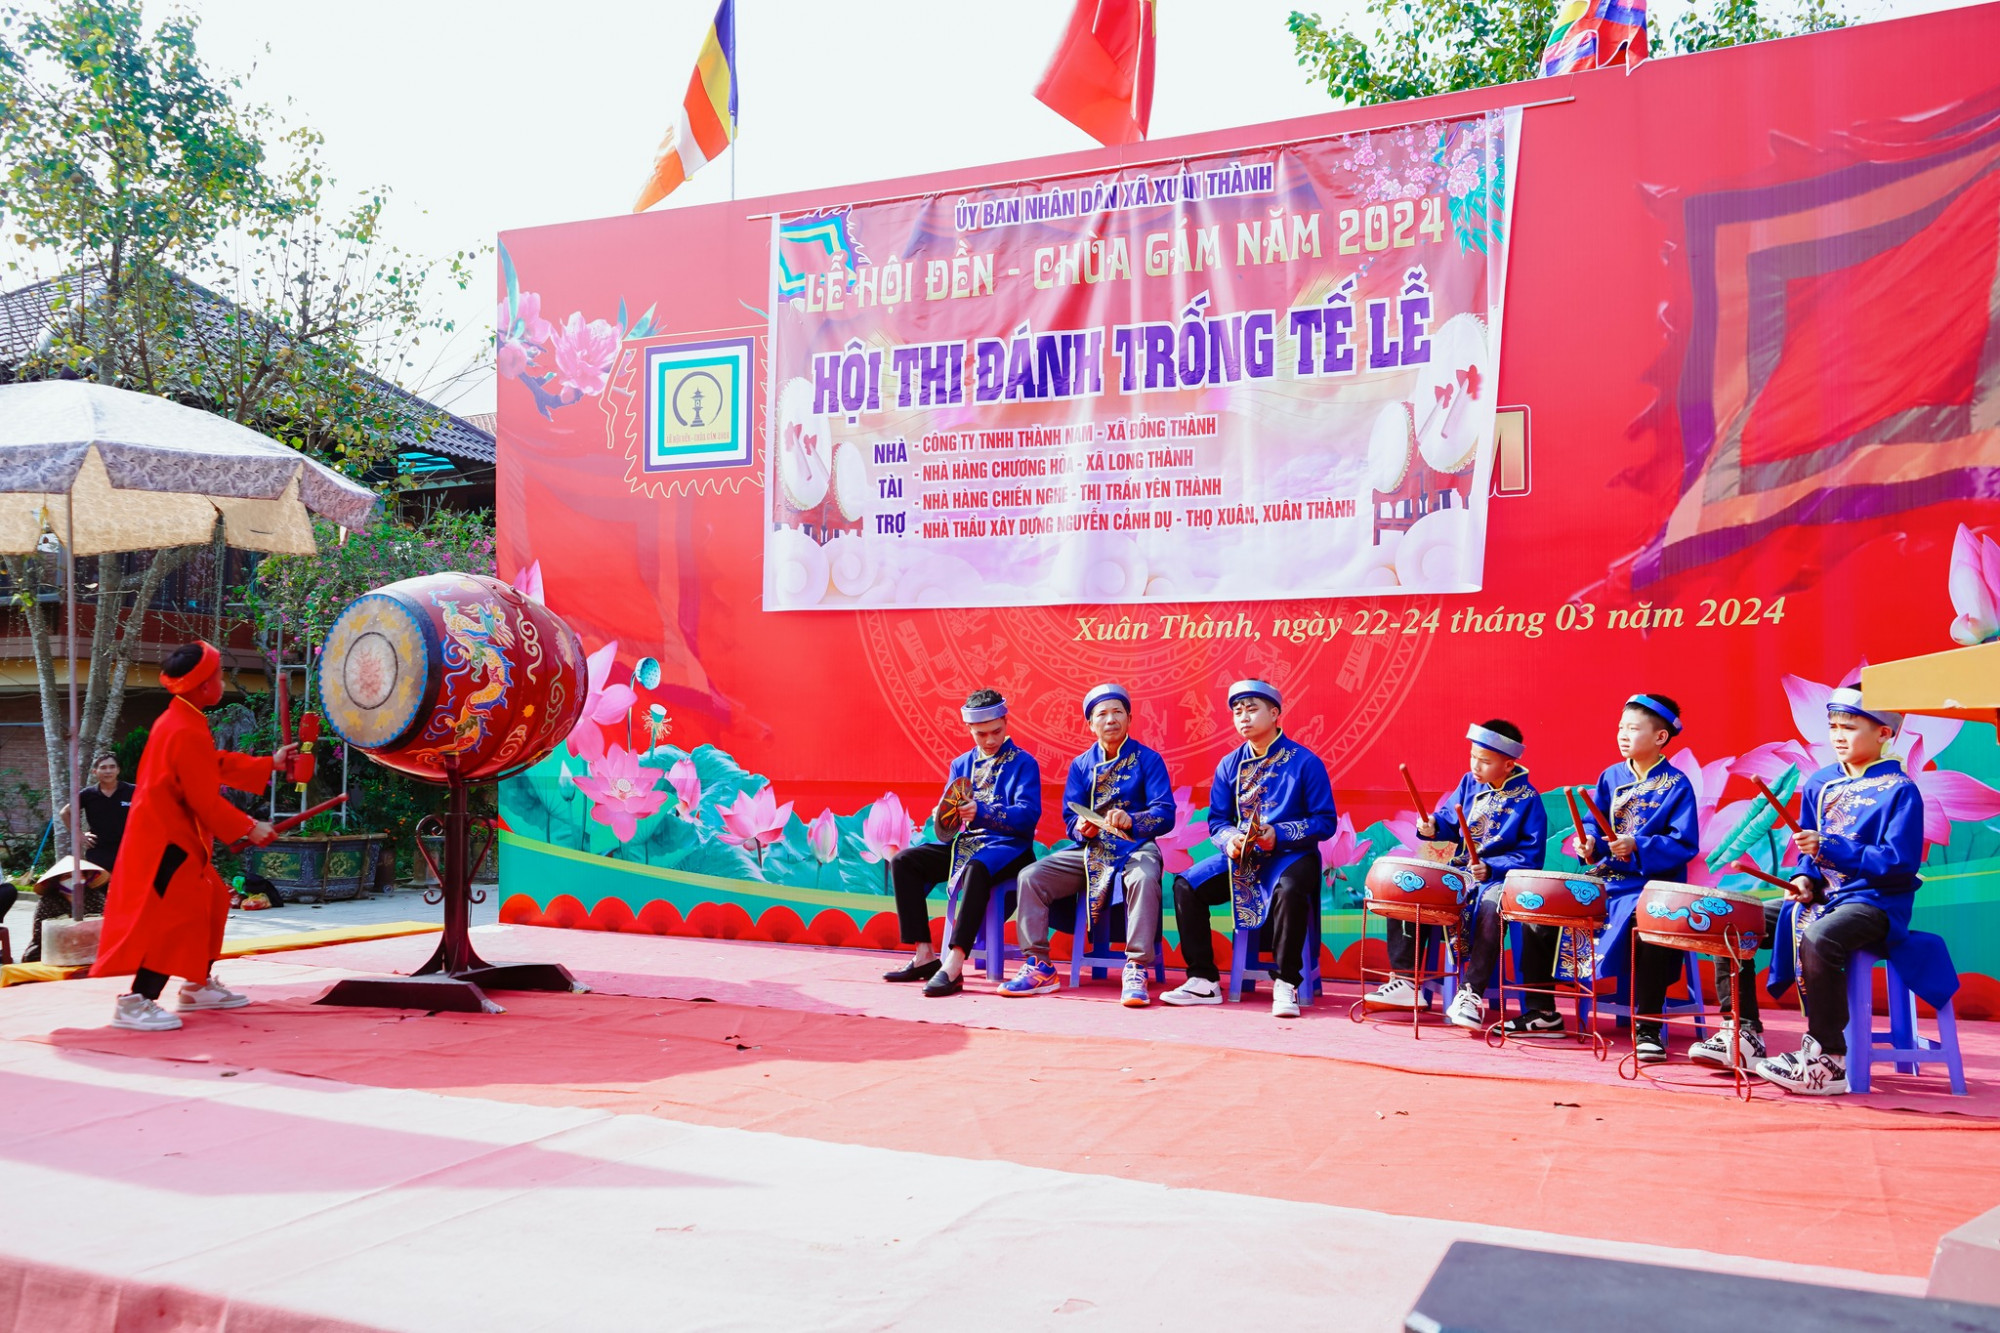 Nhiều em học sinh ở xã Xuân Thành tham gia biểu diễn đánh trống tế - Ảnh: Khánh Trung